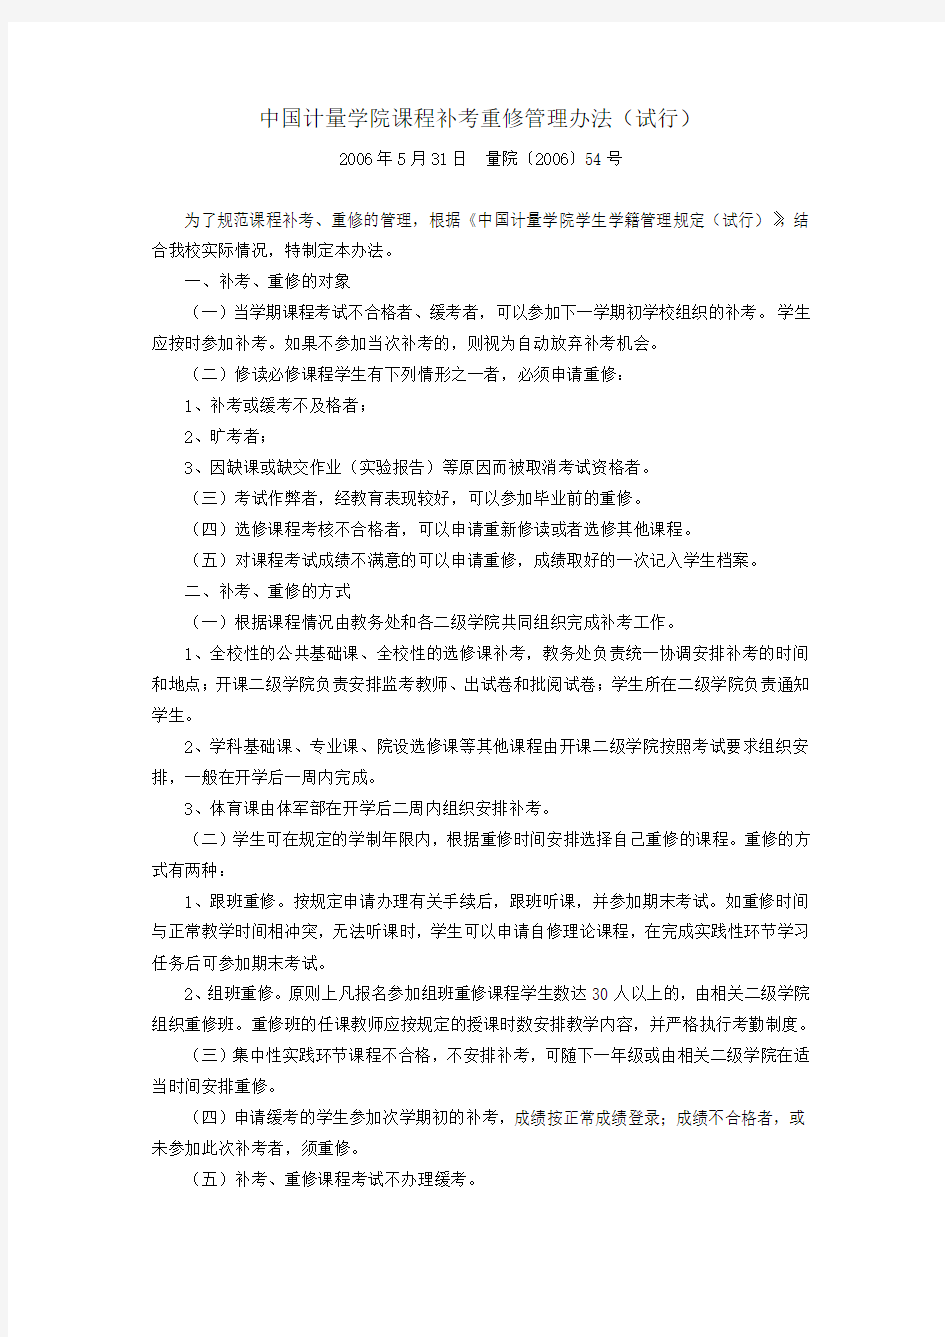 中国计量学院课程补考重修管理办法(试行)